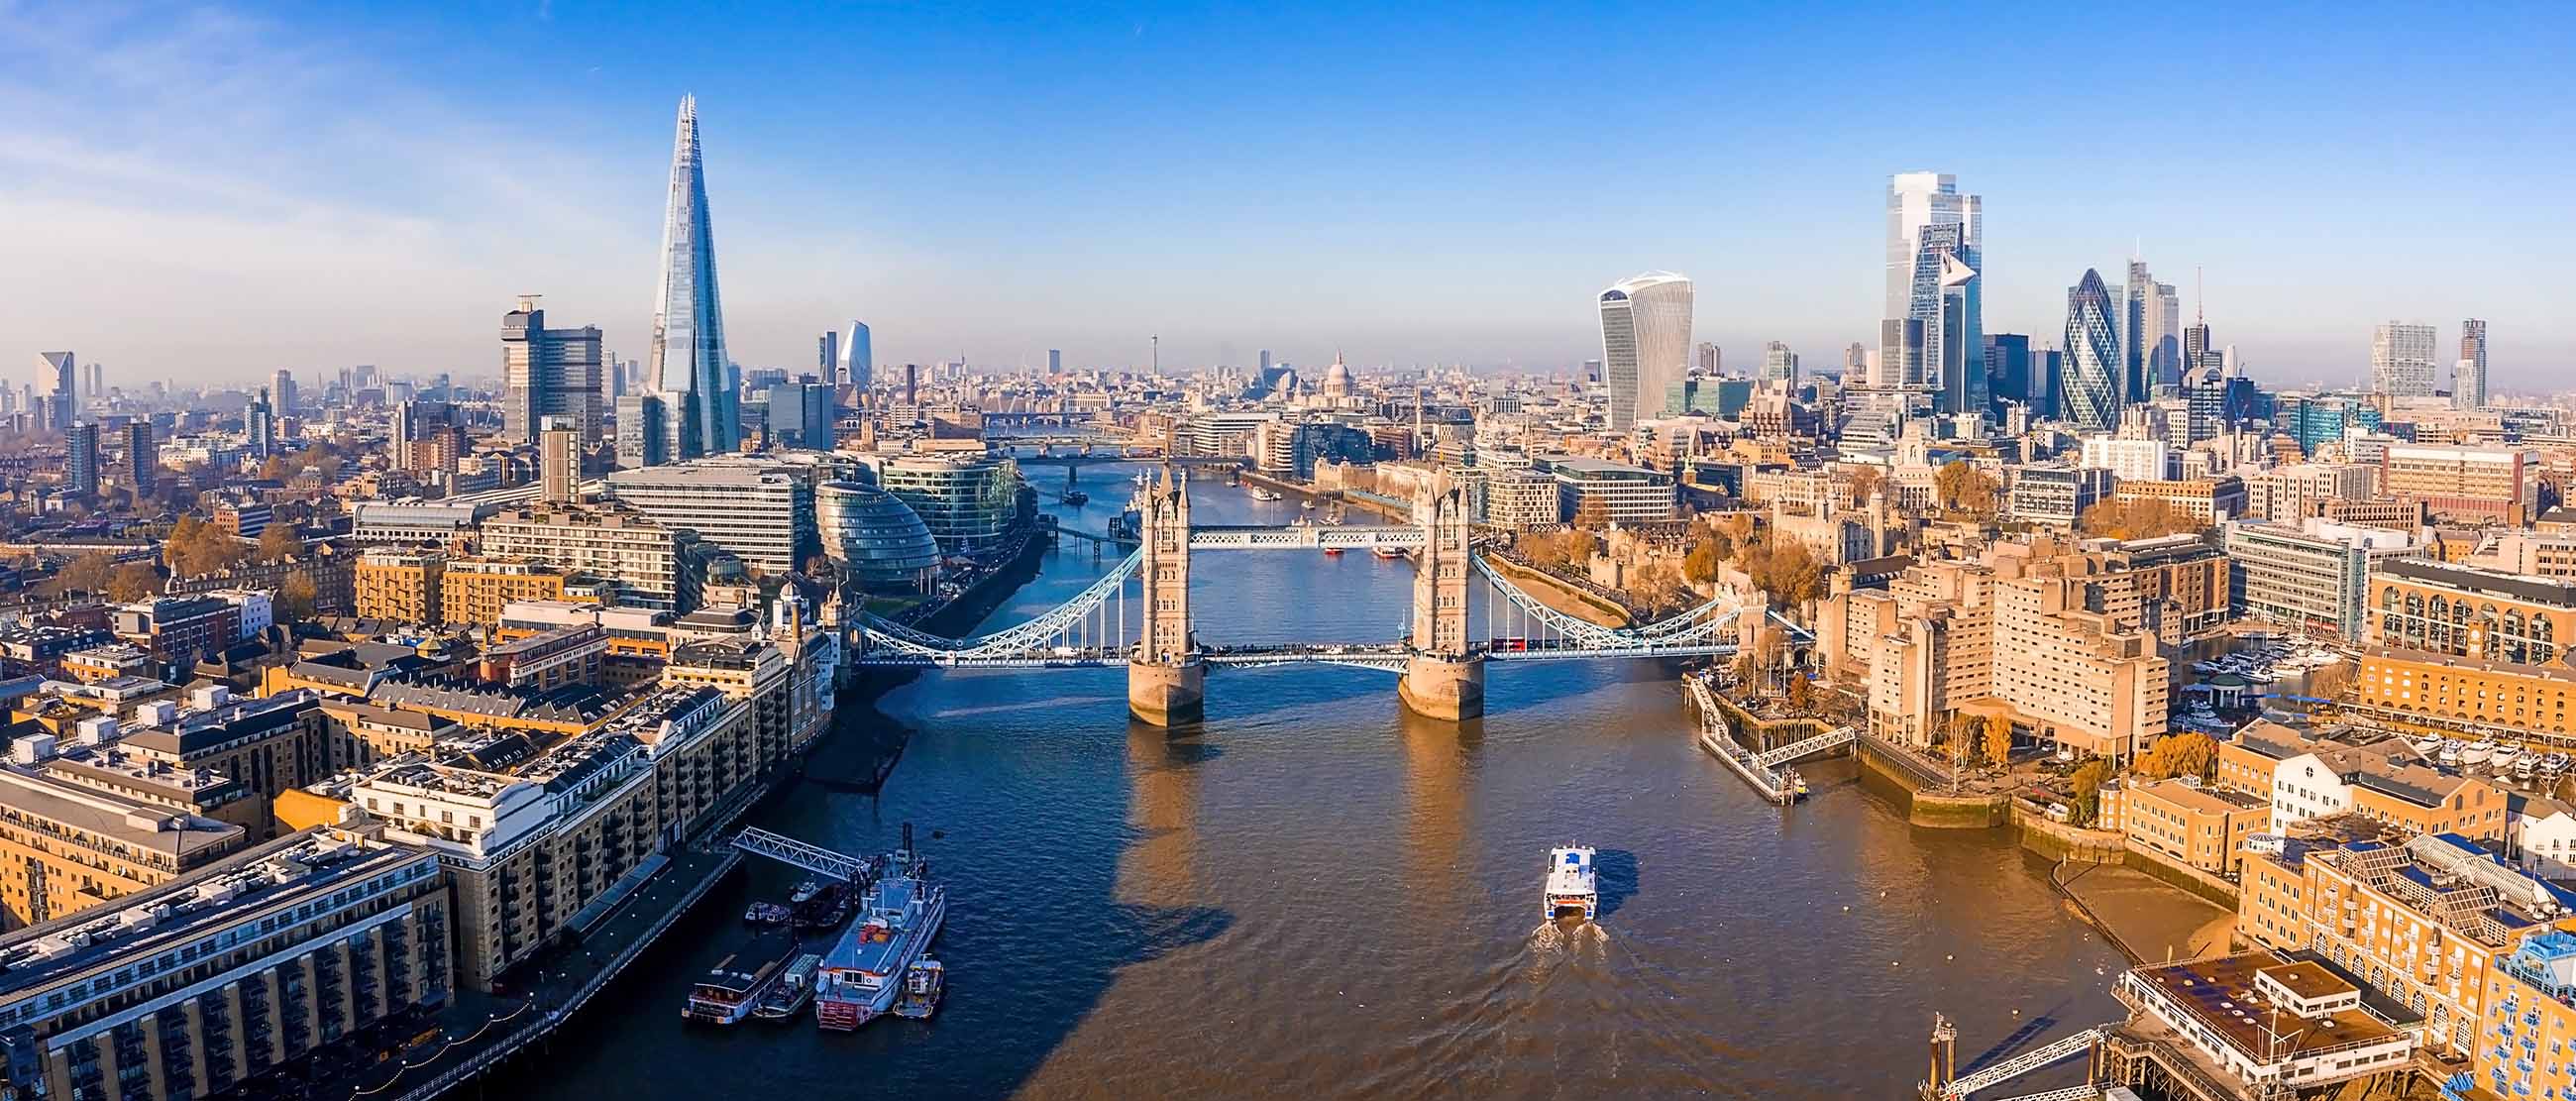 Quý khách có thể du lịch London vào thời gian khoảng từ tháng 5 - tháng 9 và tháng 12